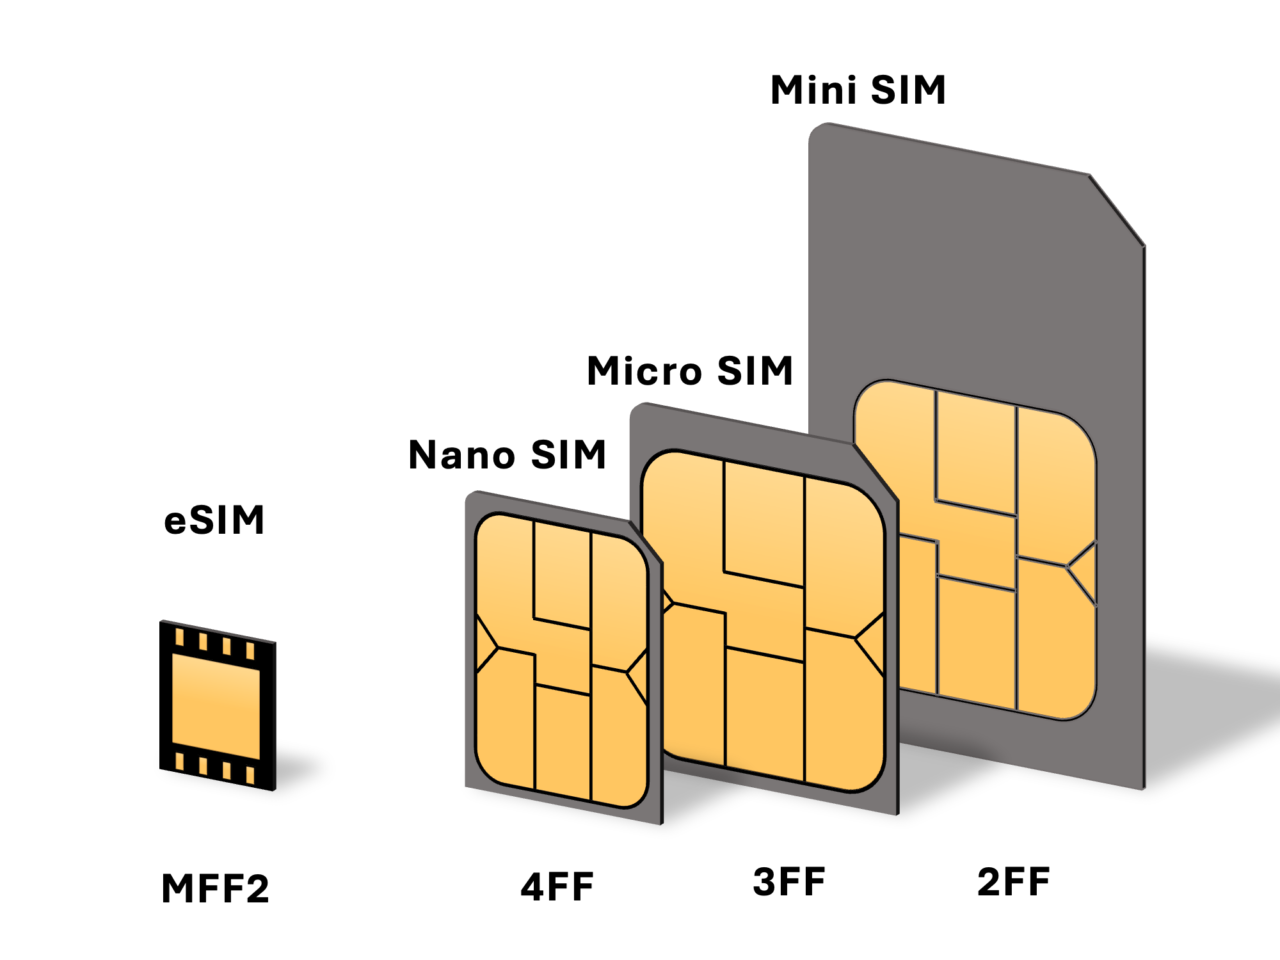 Ilustracja porównująca rozmiary kart SIM: eSIM, Nano SIM, Micro SIM i Mini SIM z oznaczeniami typu MFF2, 4FF, 3FF i 2FF.